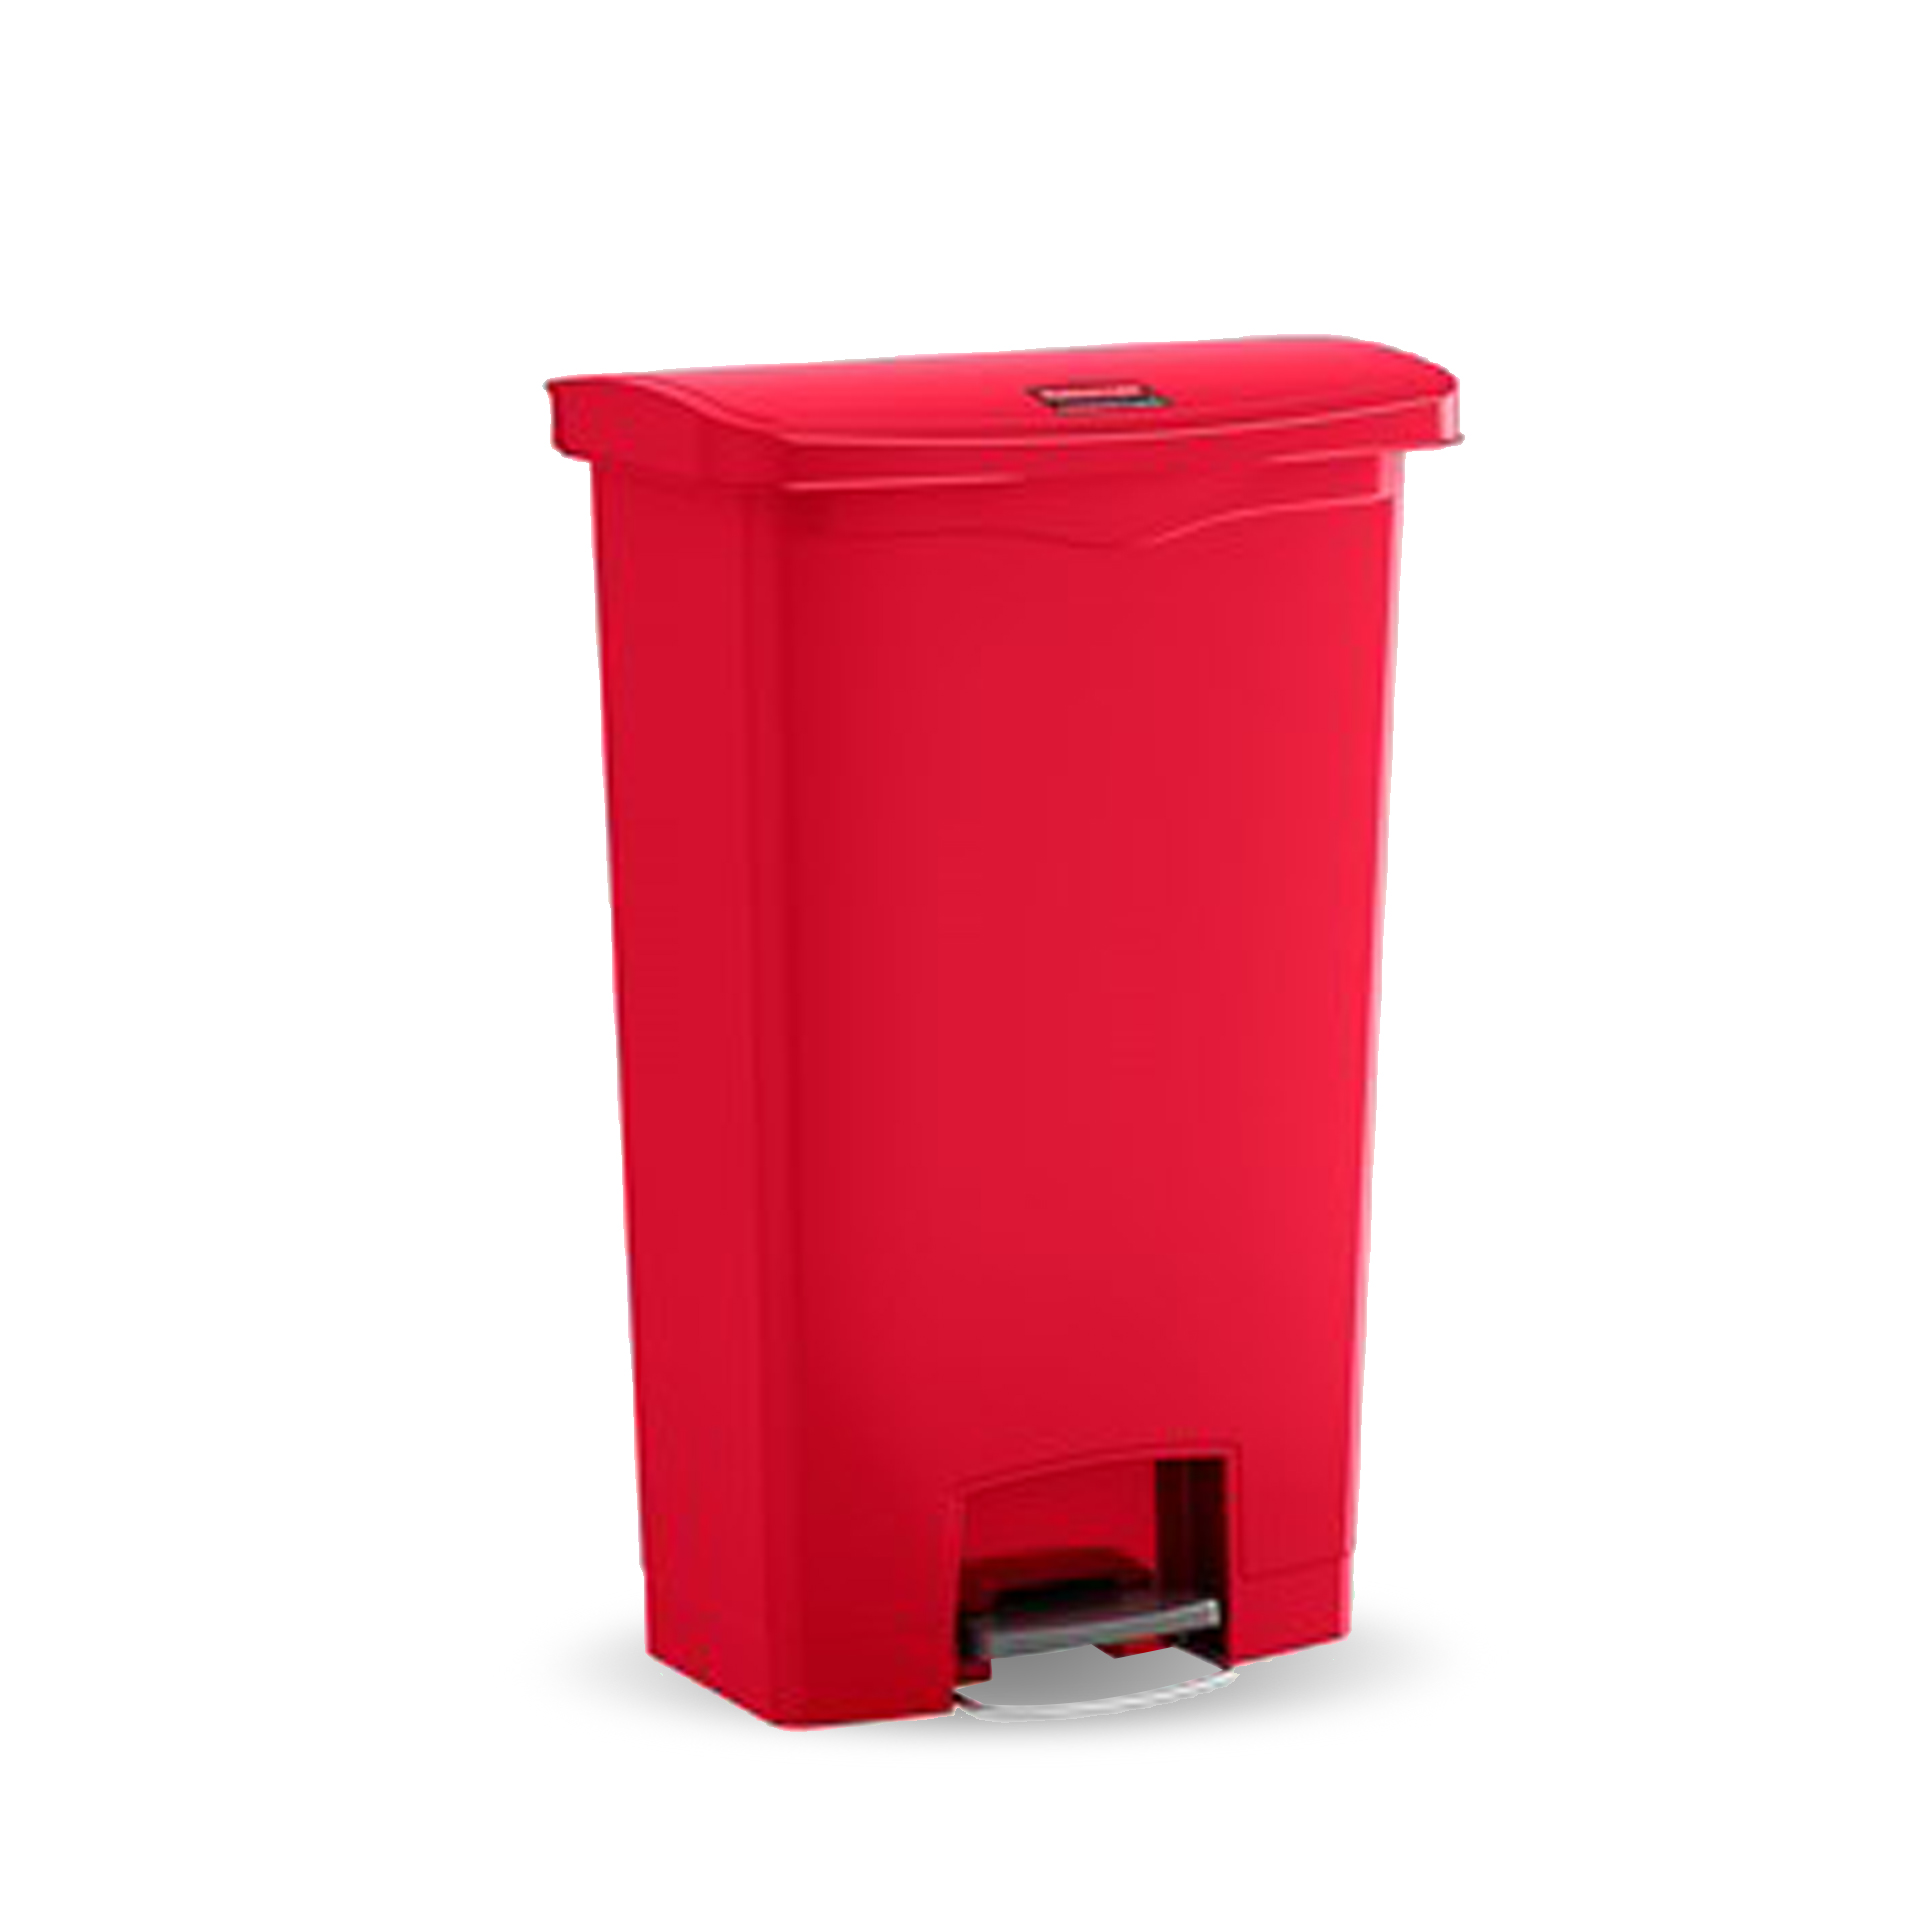 ถังขยะแบบเท้าเหยียบ Slim Jim® Step-On Container ขนาด 30 ลิตร สีแดง